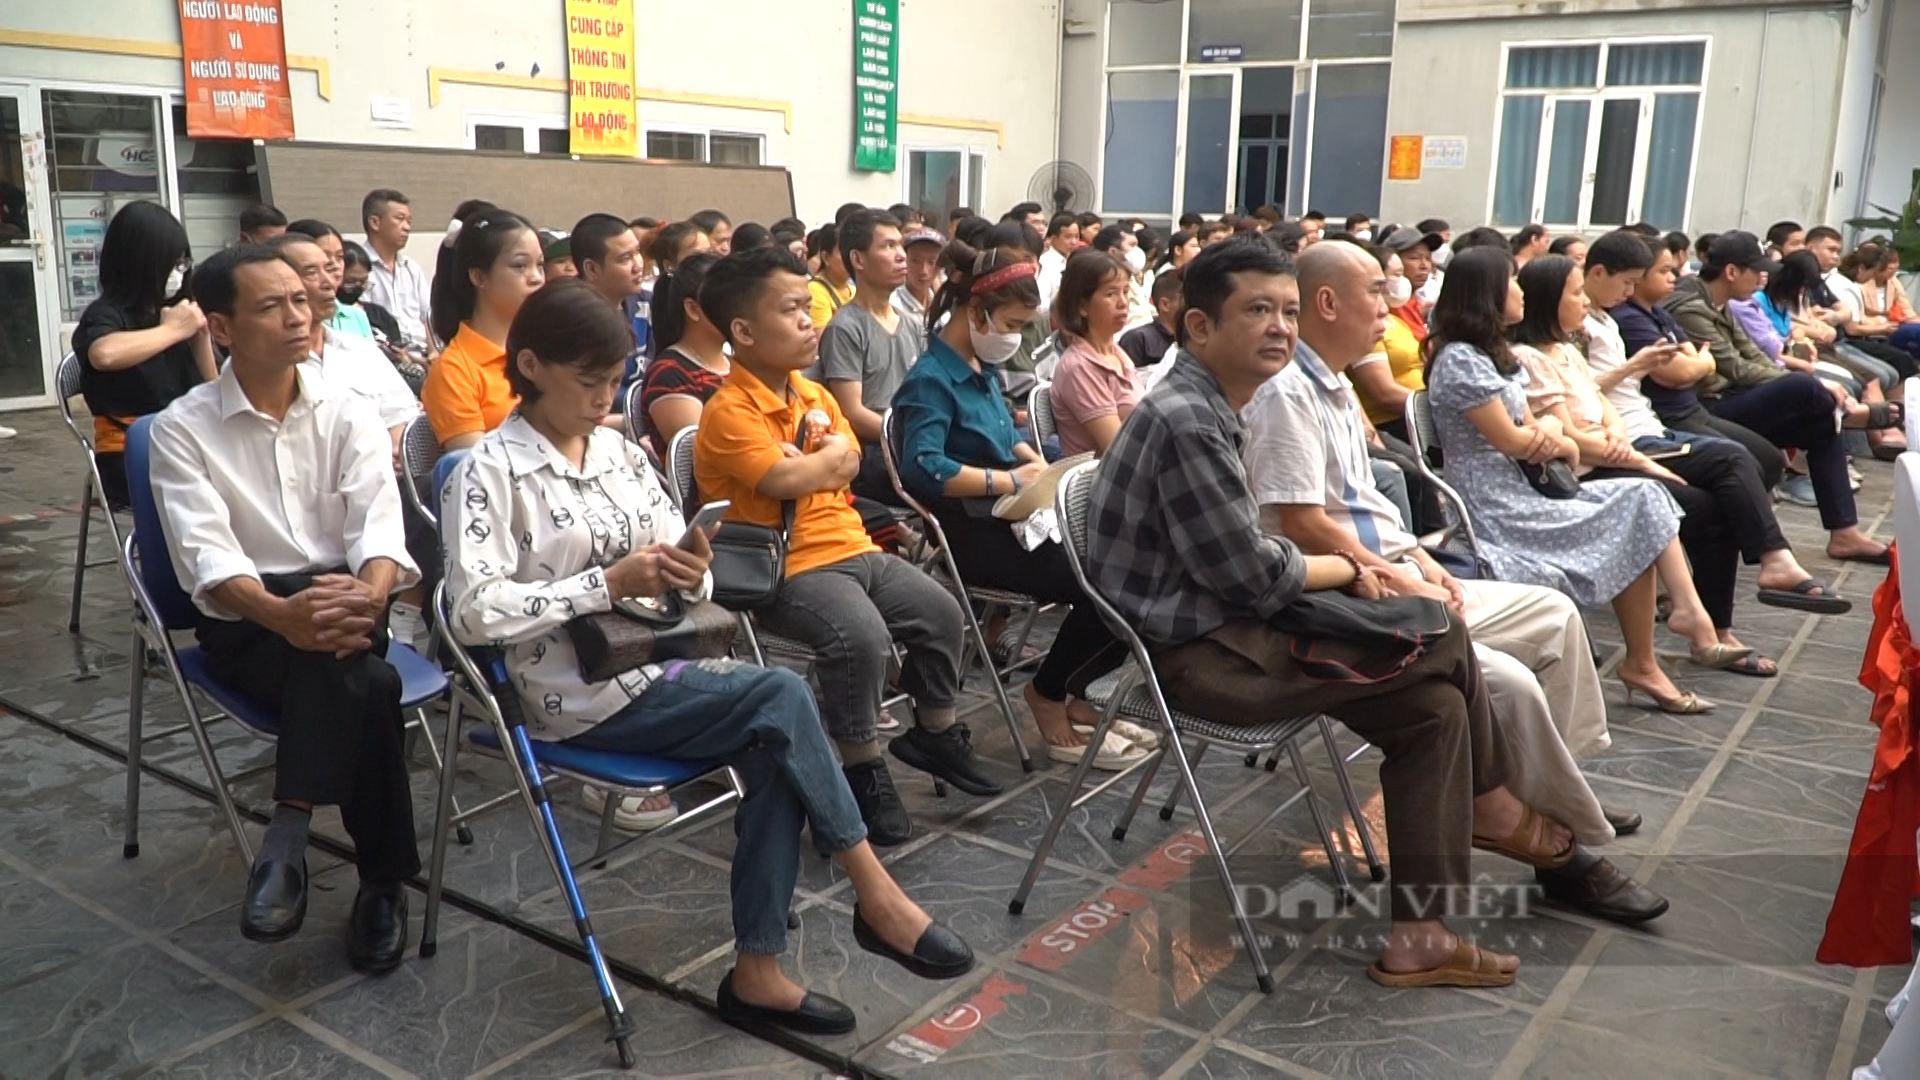 Hàng trăm lao động là người khuyết tật tại các quận huyện thuộc thành phố Hà Nội đã tham gia phiên giao dịch việc làm. Ảnh: Trung Hiếu.